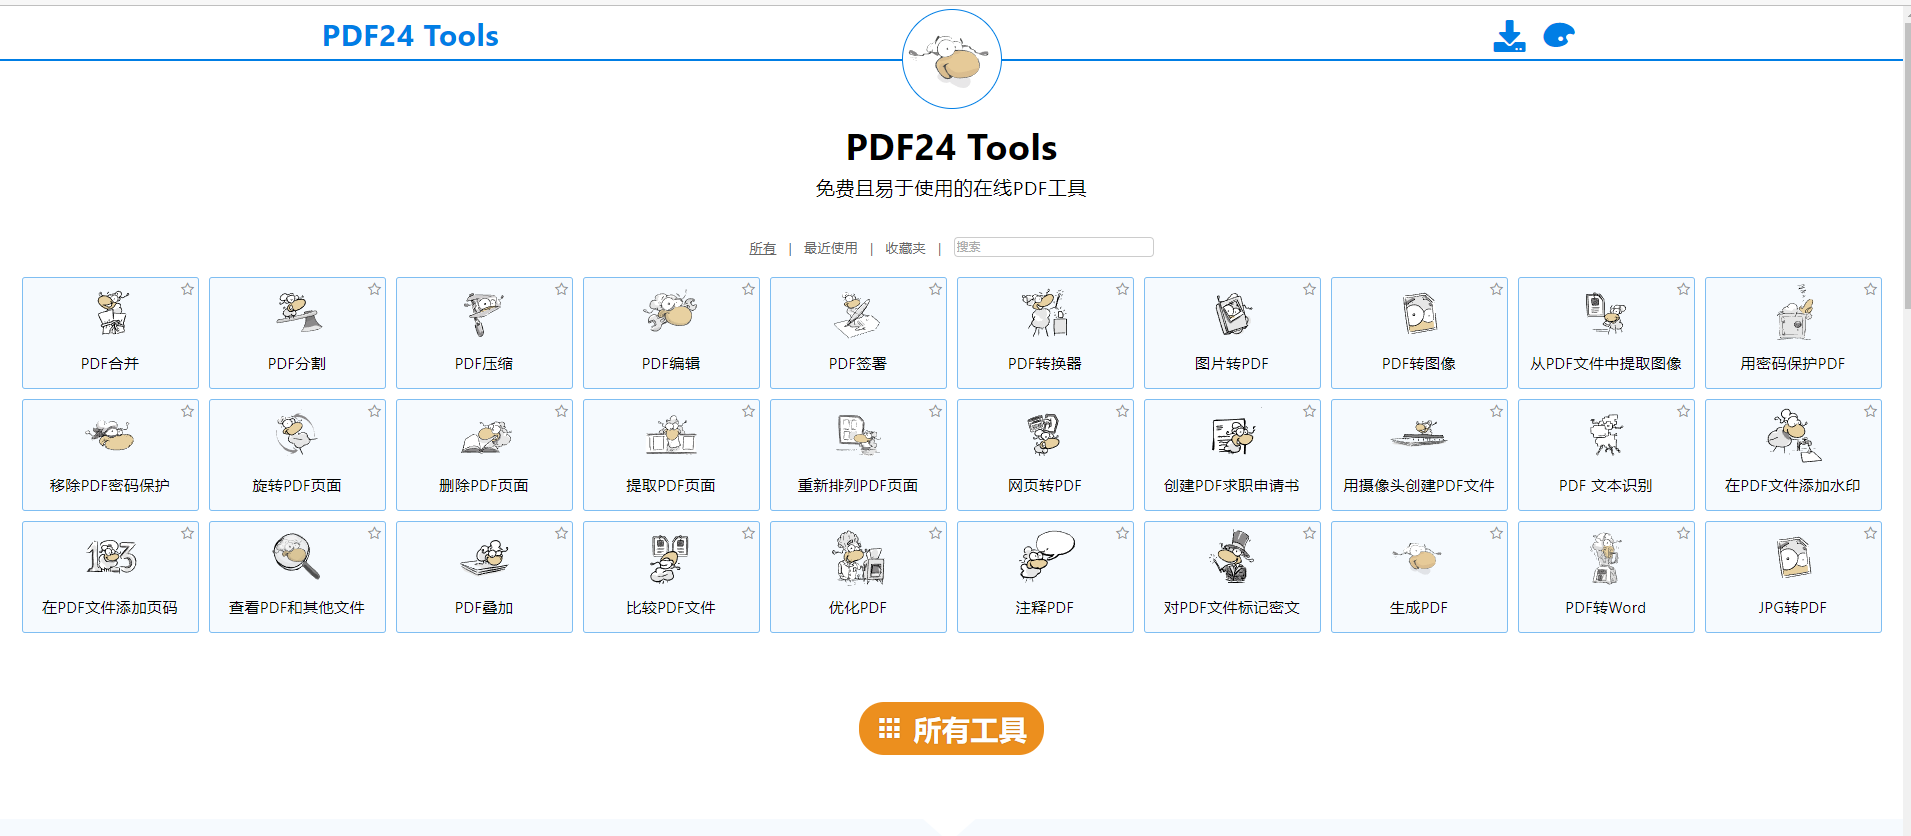 [Windows] 免费实用的PDF24工具箱插图